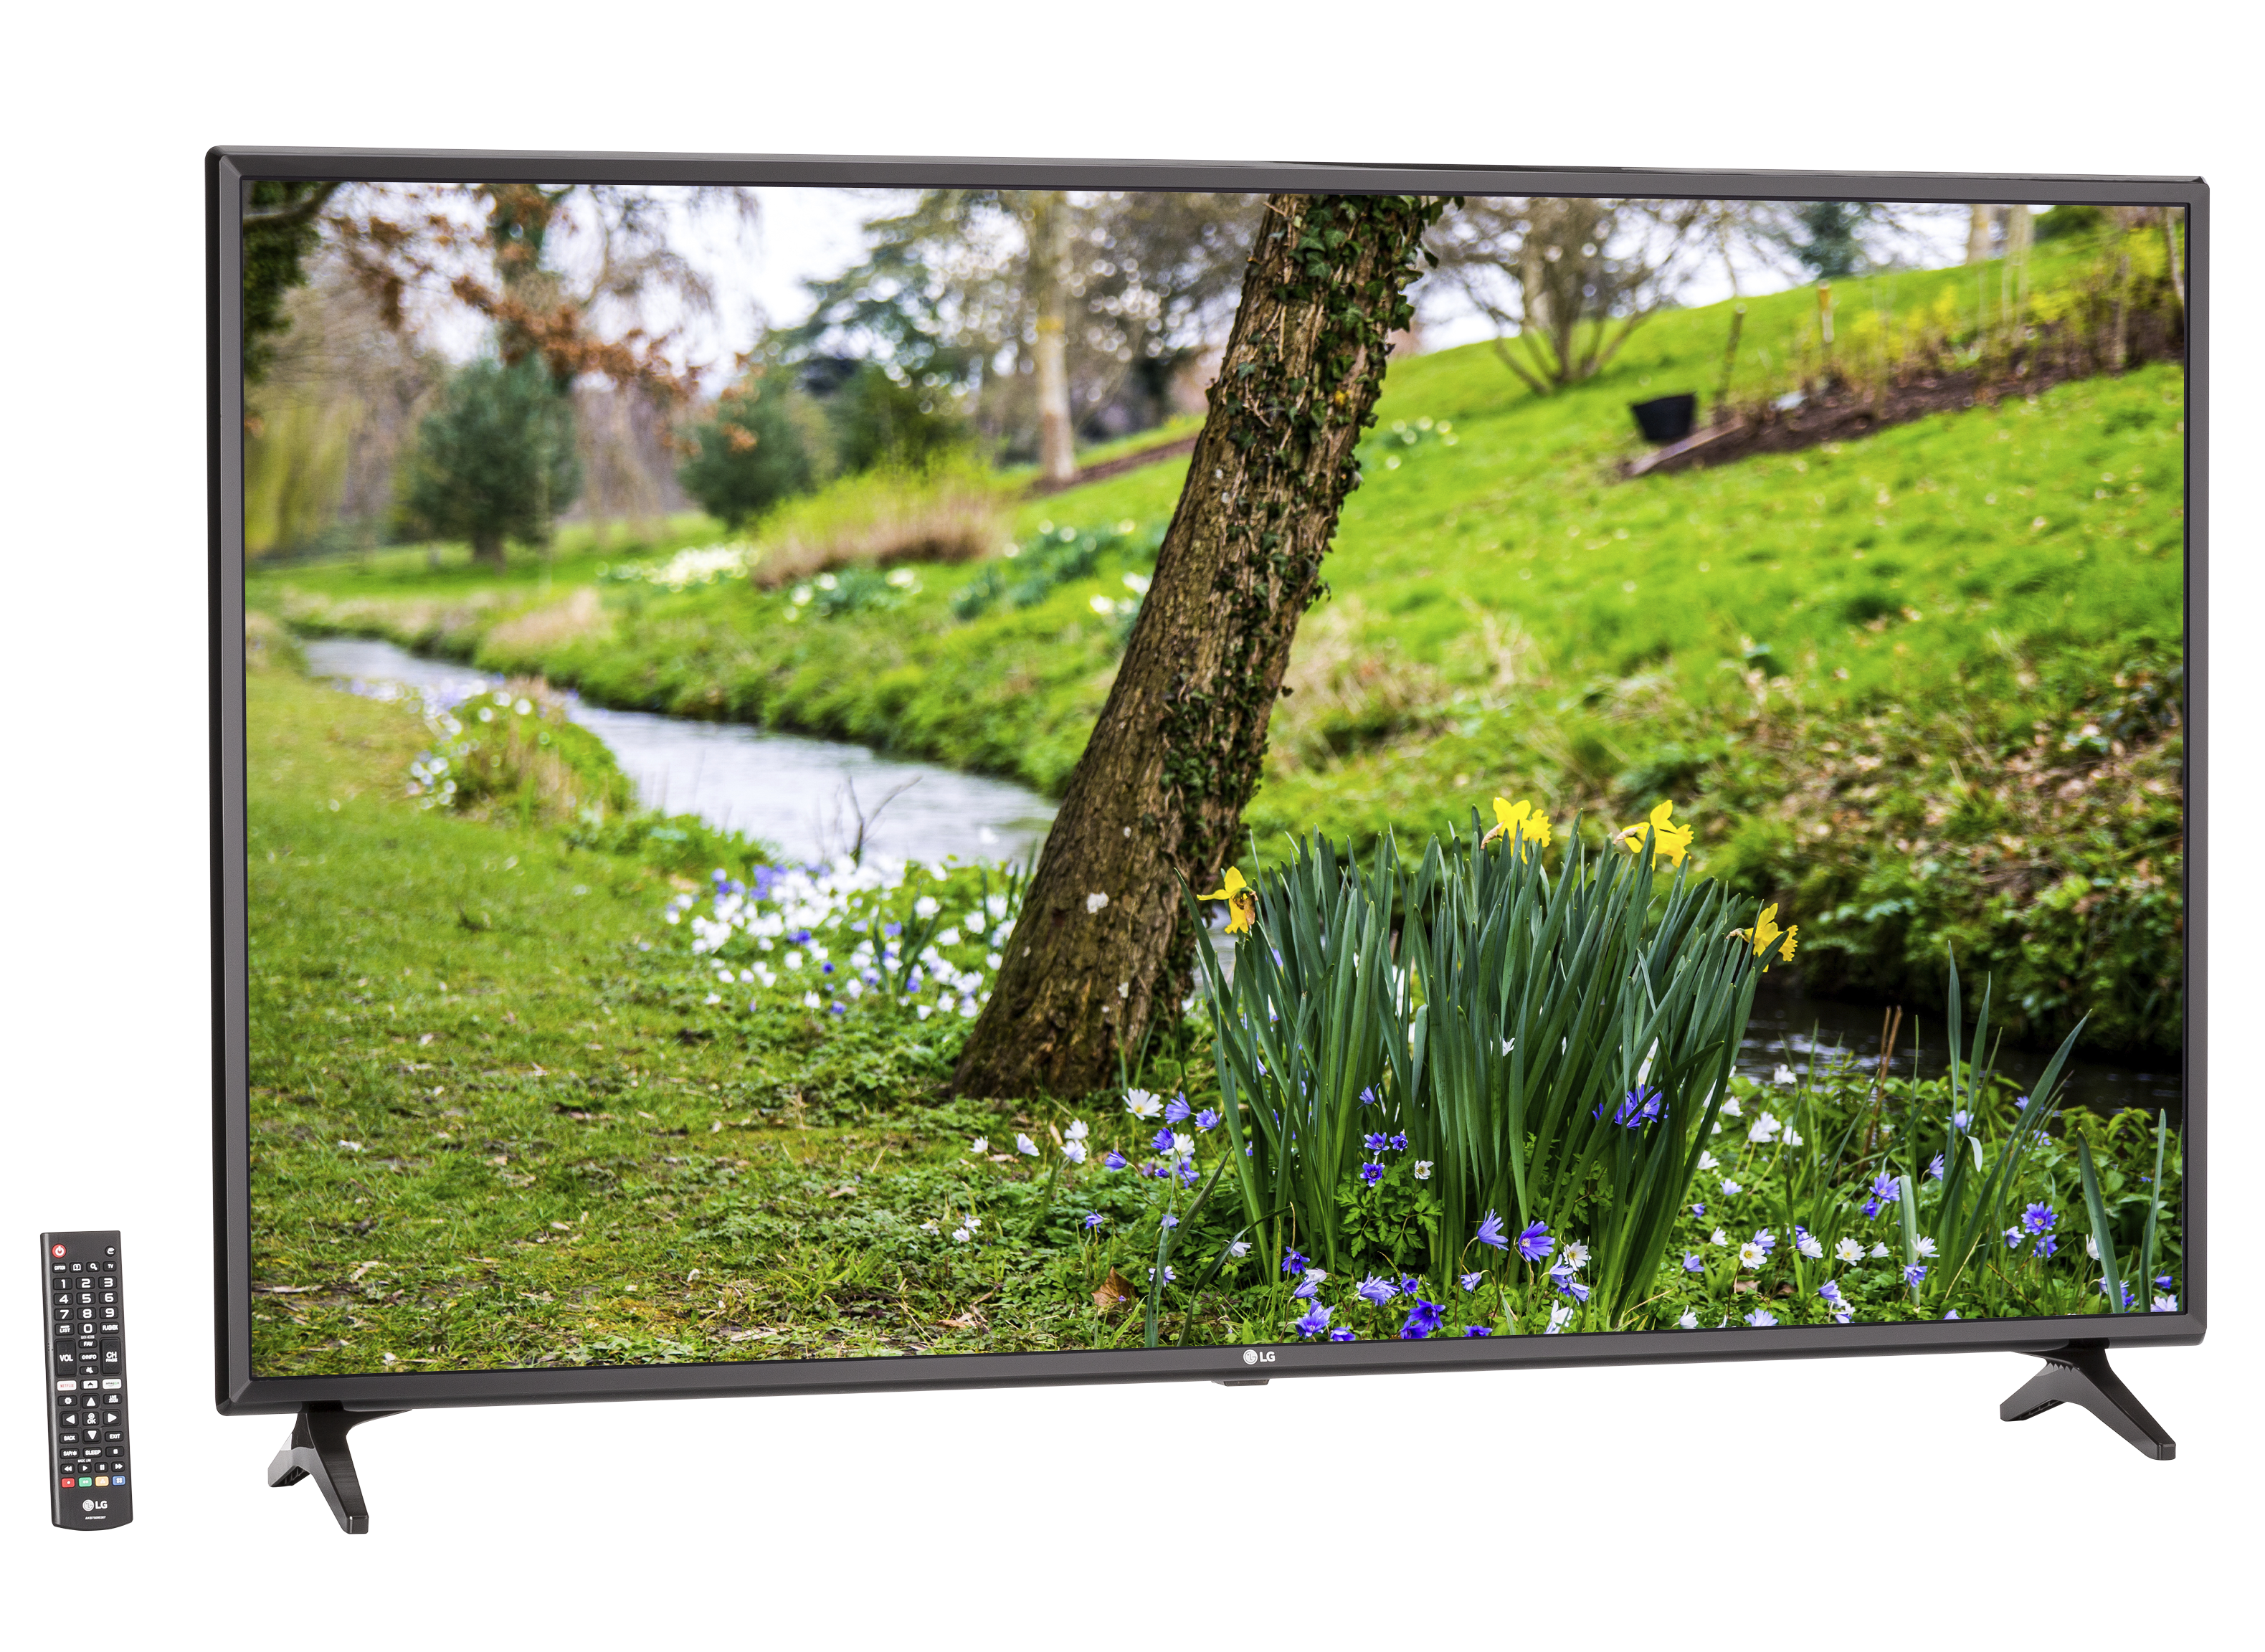 LG 55 FHD (1080P) Smart LED TV (55LJ5500)